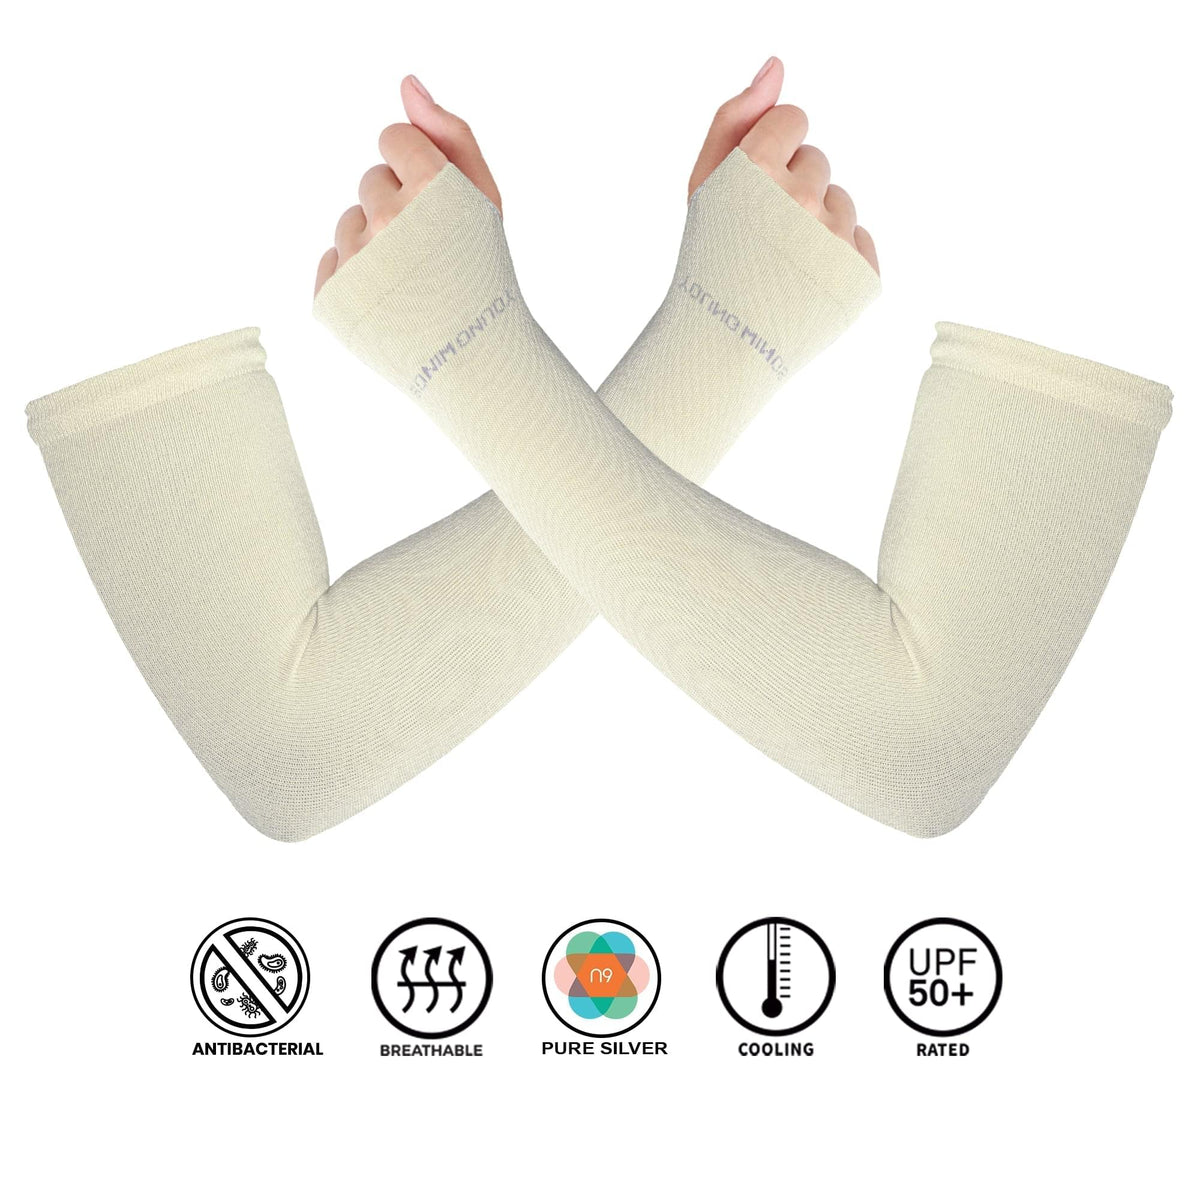 Antibacterial Arm Protectors/Sleeves for Women (Pack of 1 - Pair, UPF 50+)